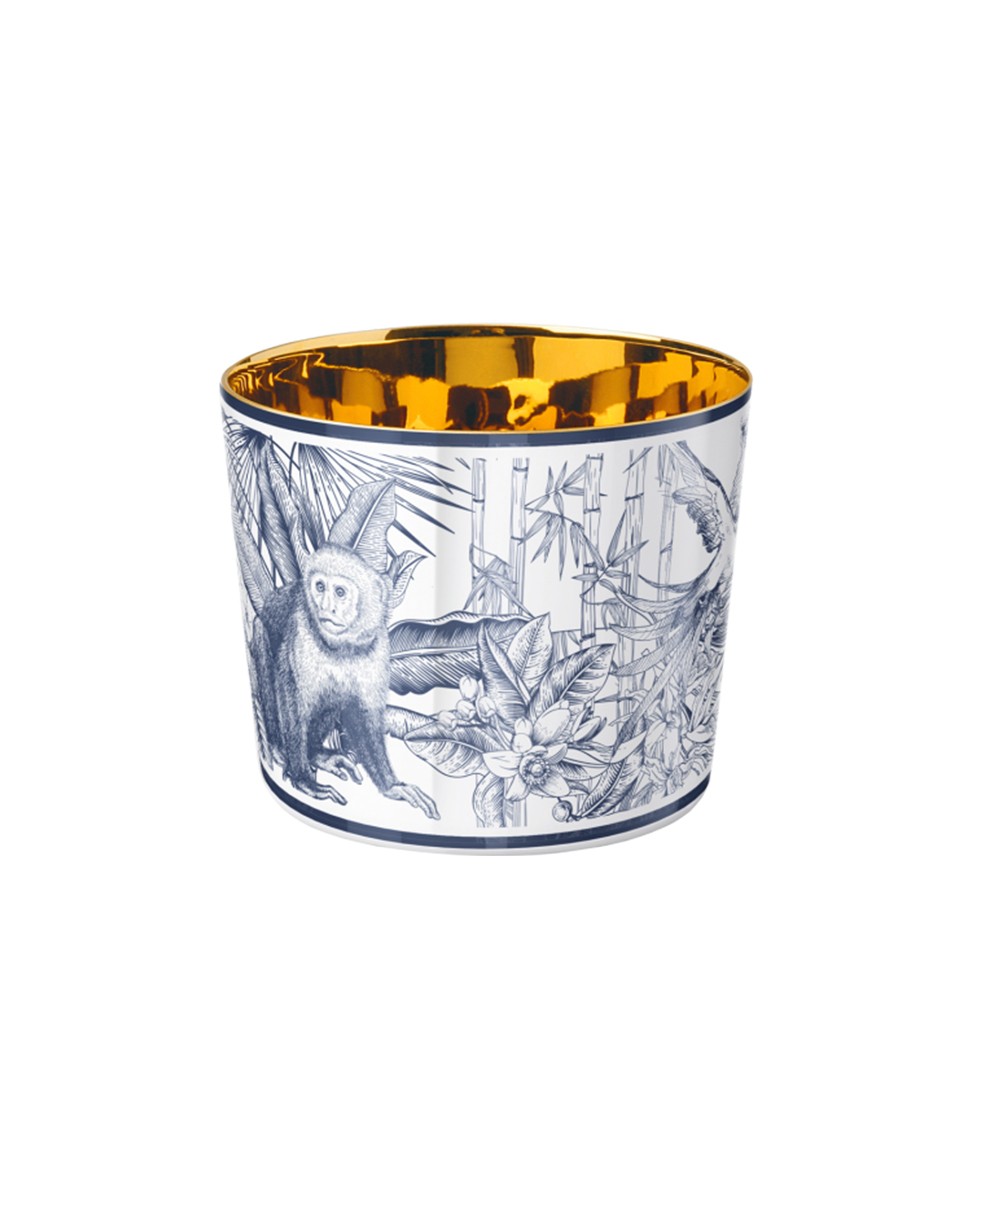 Produktbild der Sip of Gold Champagnerbecher aus der Temptation Kollektion "Monkey" von Sieger by Fürstenberg im RAUM concept store 